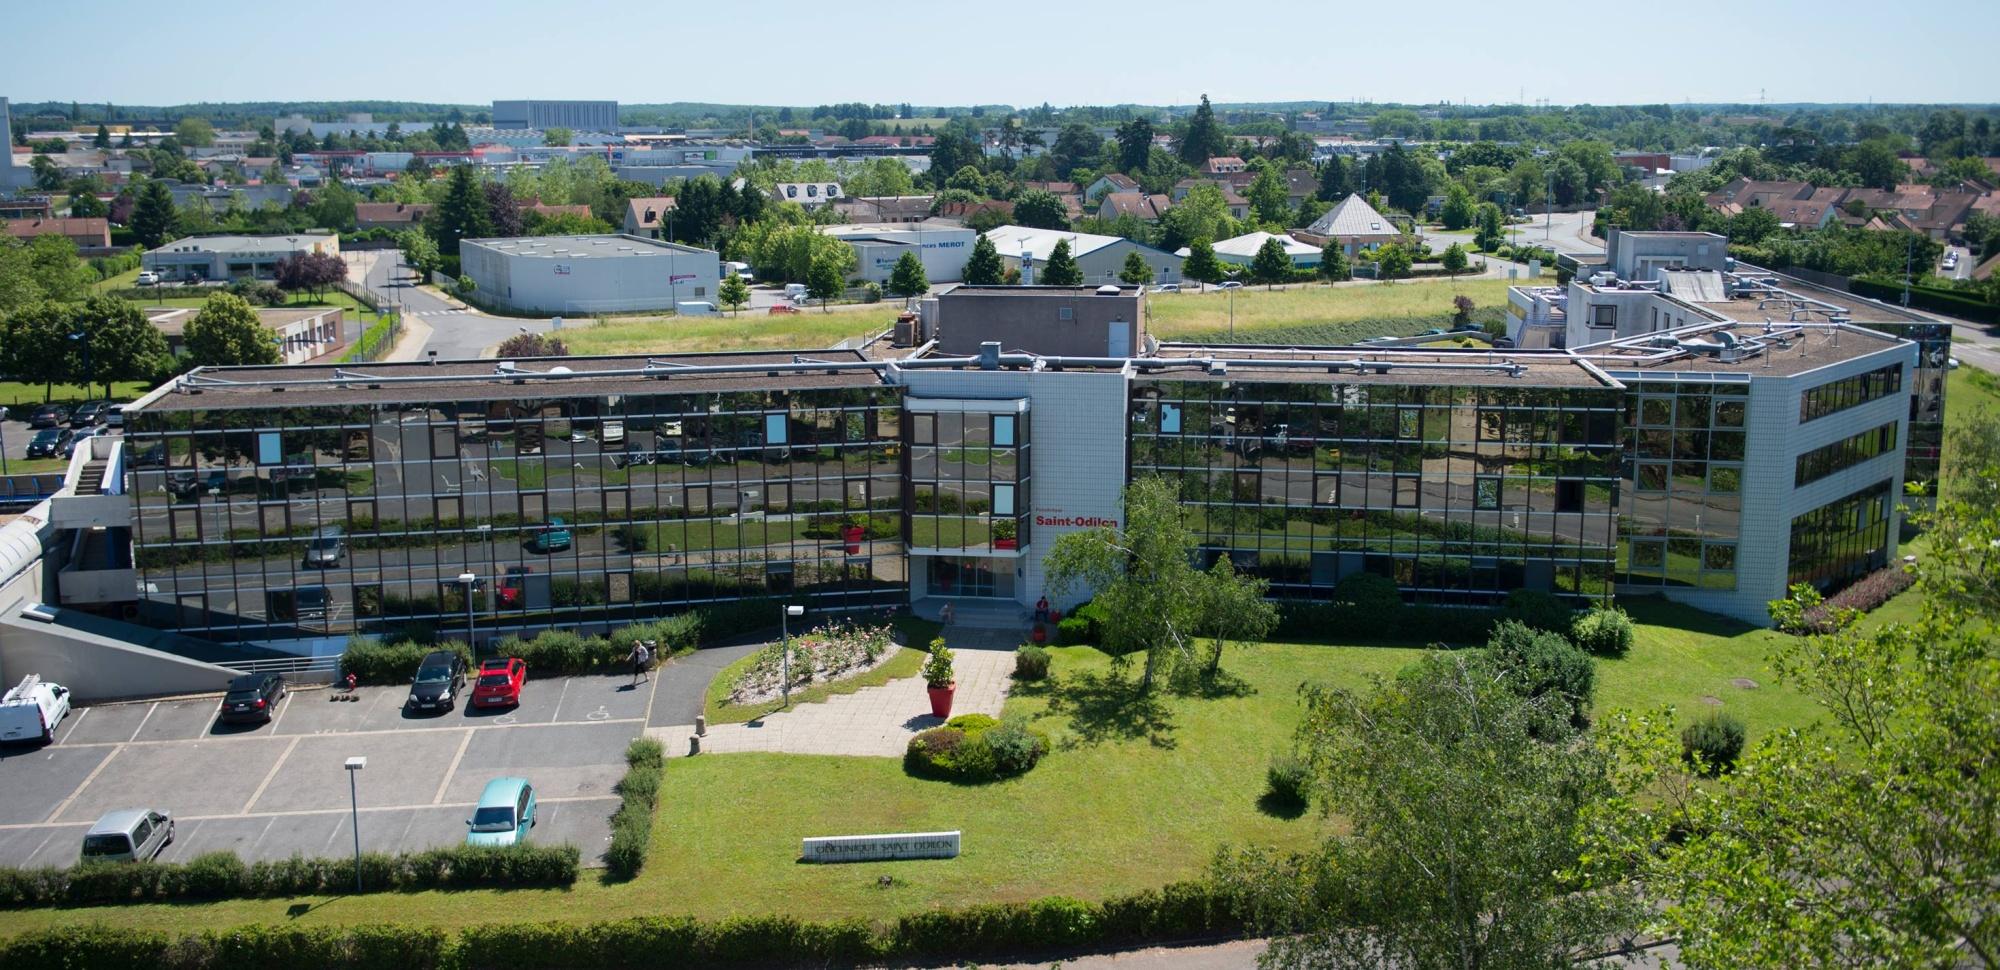 Centre De Radiologie De St Odilon Moulins